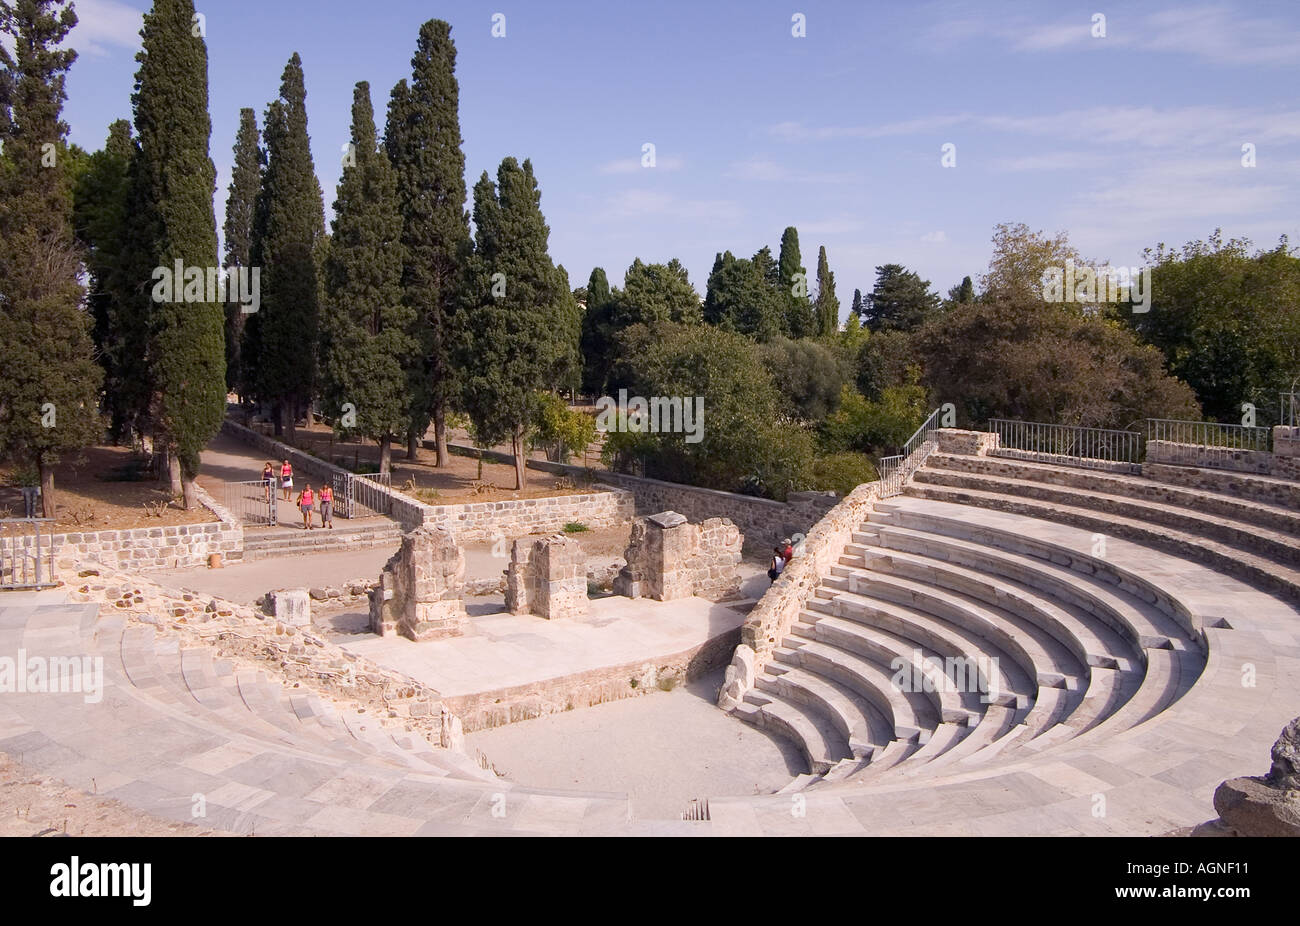 dh Odeon Amphitheater KOS STADT KOS Tourist Ankunft in griechisch amphitheater Bühne und Sitze römischen Ruinen Inseln Griechenland Stockfoto